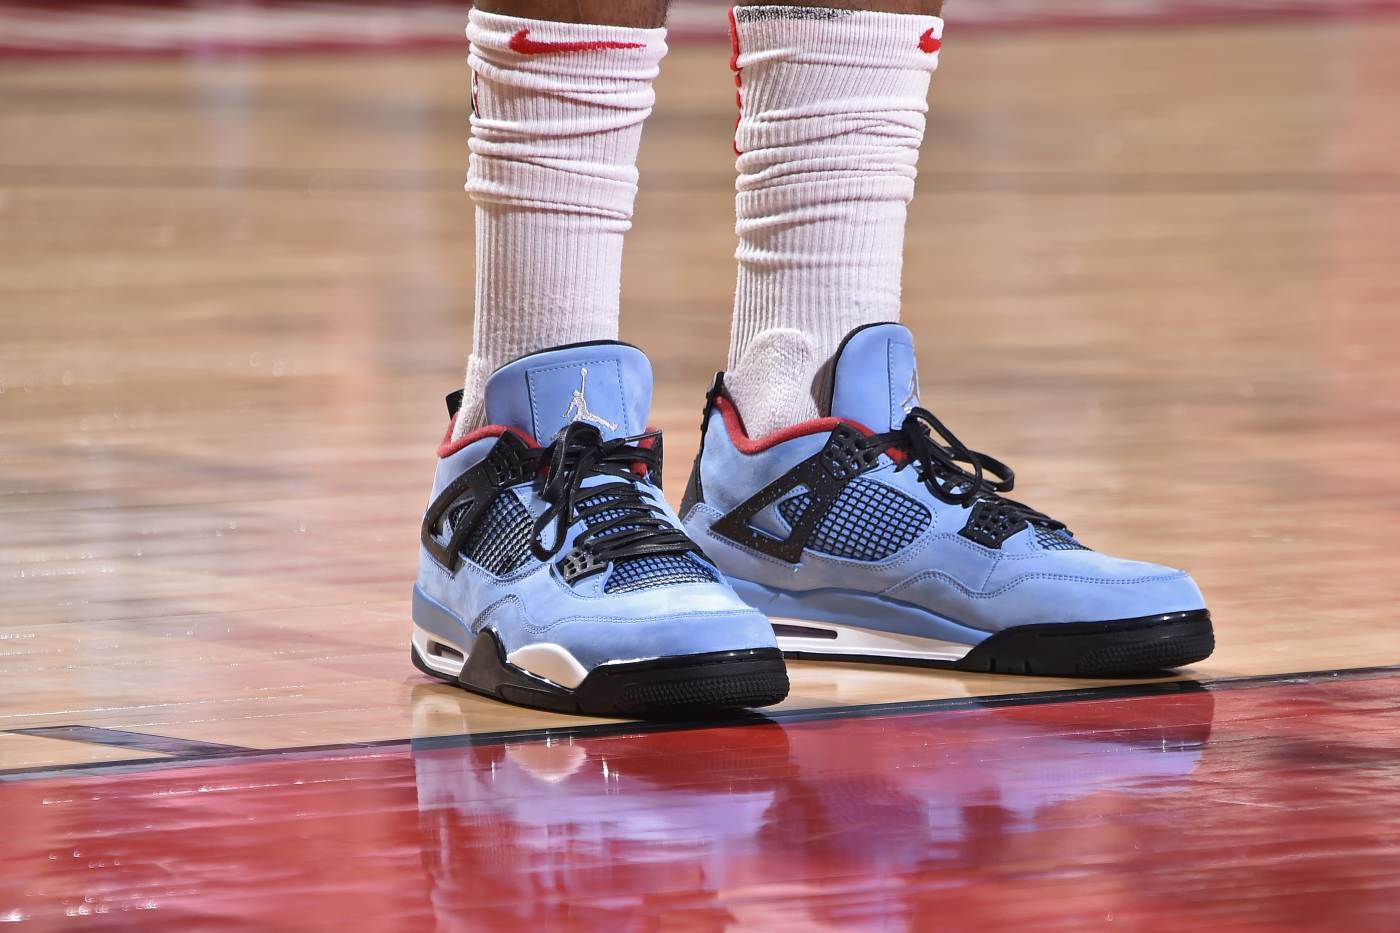 Chi tiết và đầy đủ các mẫu giày khủng của Thánh giày P.J. Tucker tại NBA Playoffs 2018 (kỳ 1) - Ảnh 5.